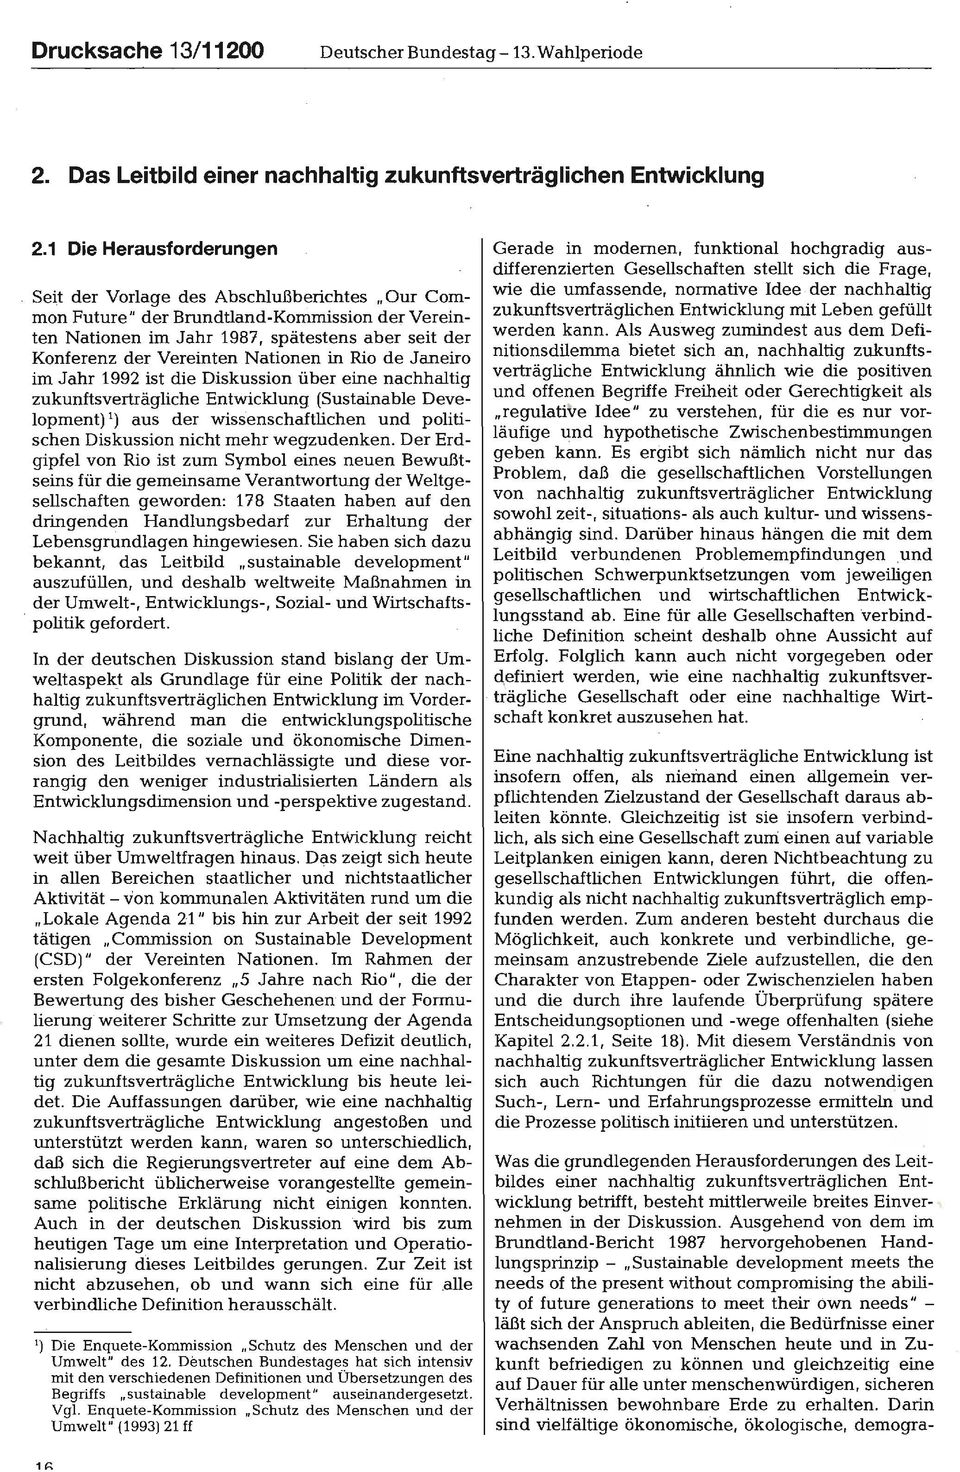 Nationen in Rio de Janeiro im Jahr 1992 ist die Diskussion über eine nachhaltig zukunftsverträgliche Entwicklung (Sustainable Development) 1) aus der wissenschaftlichen und politischen Diskussion